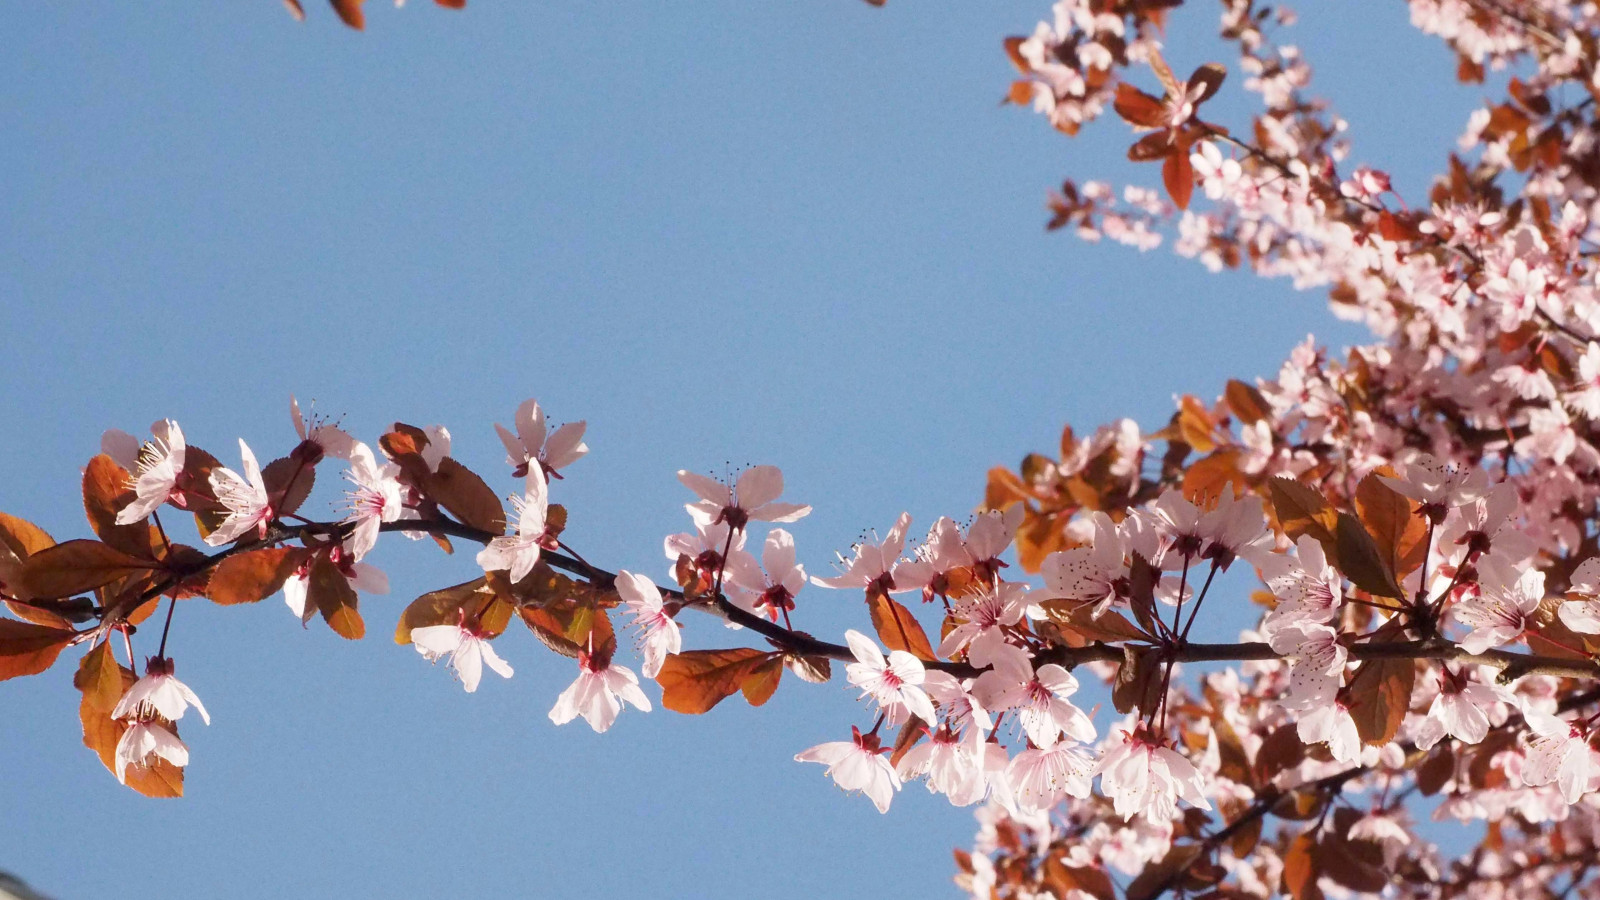 Les cerisiers fleurissent pendant les mois de mars et avril. Que ce soit en ville ou à la campagne. 